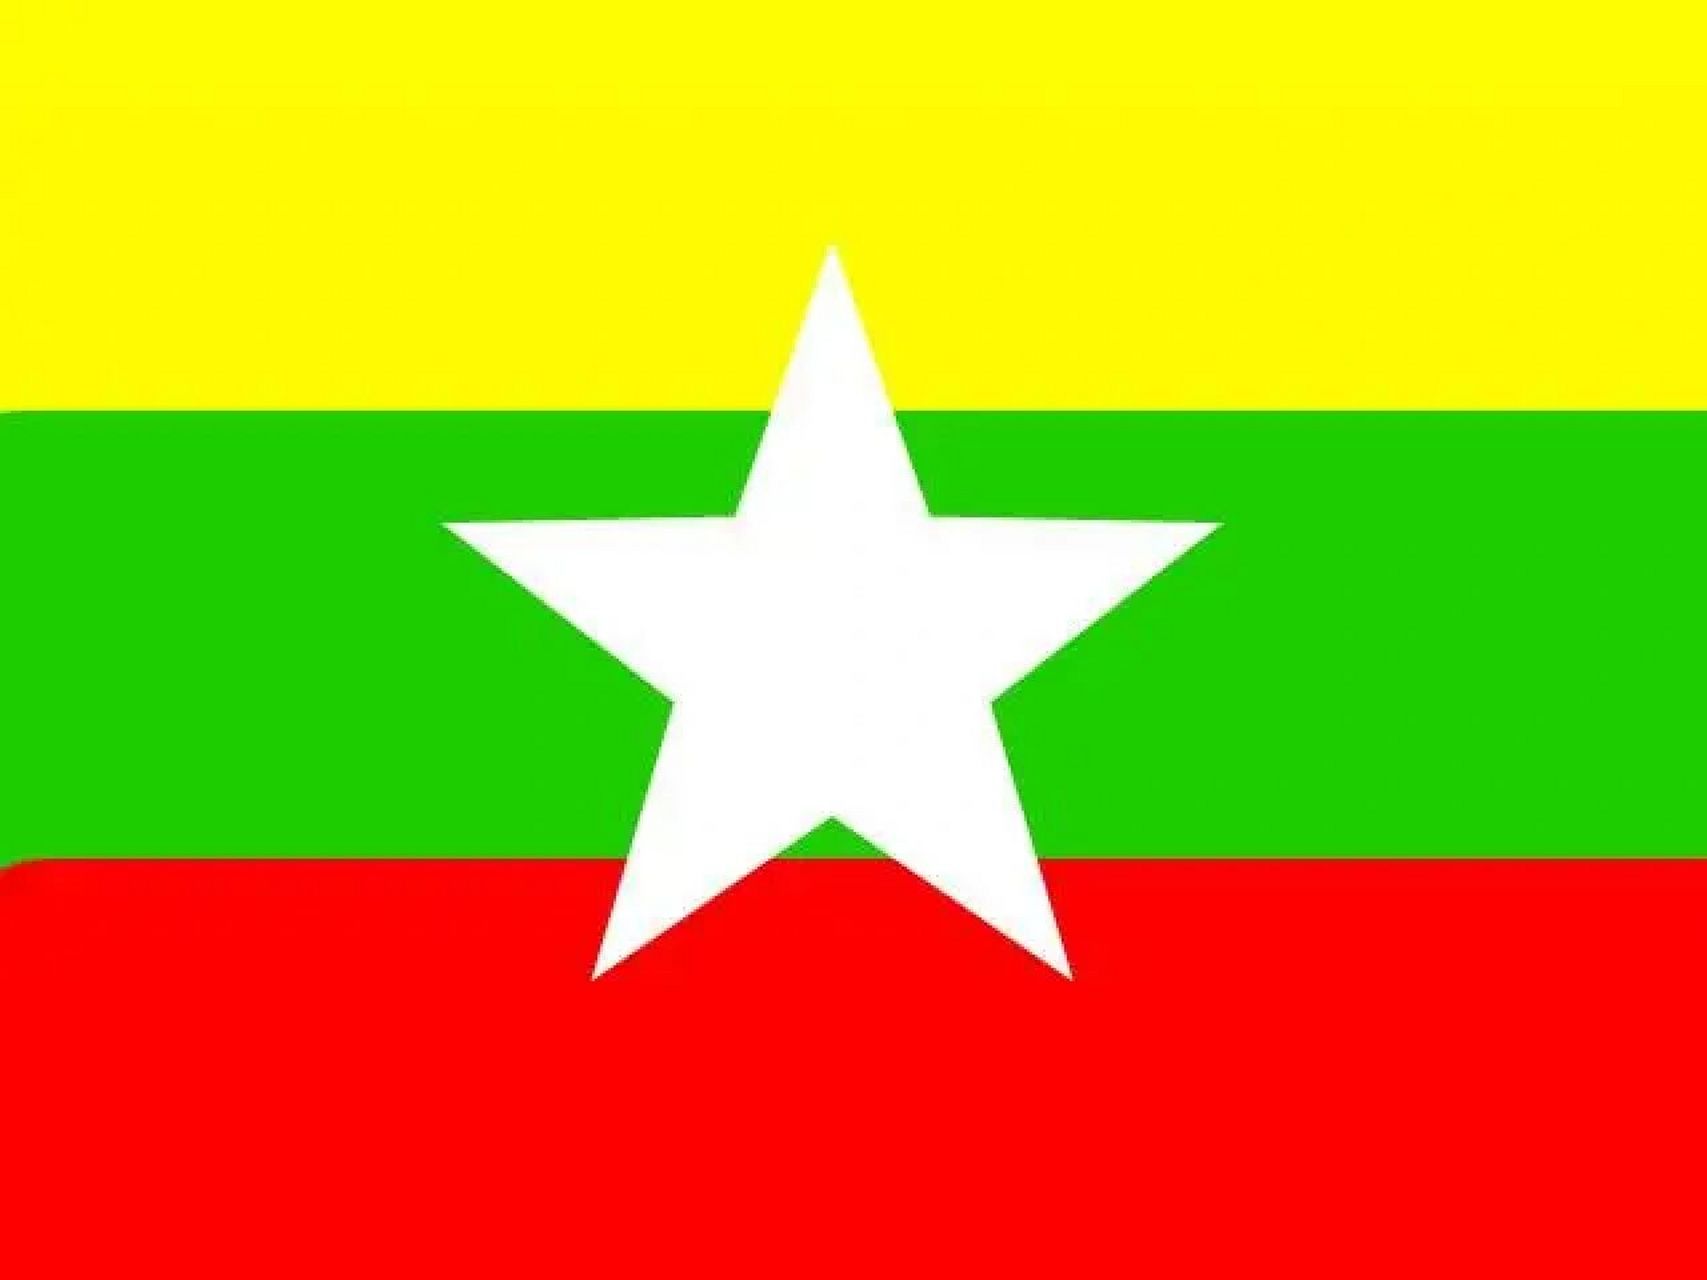 各国国旗意义@缅甸 缅甸联邦共和国国旗为16:9的长方形,由自上而下